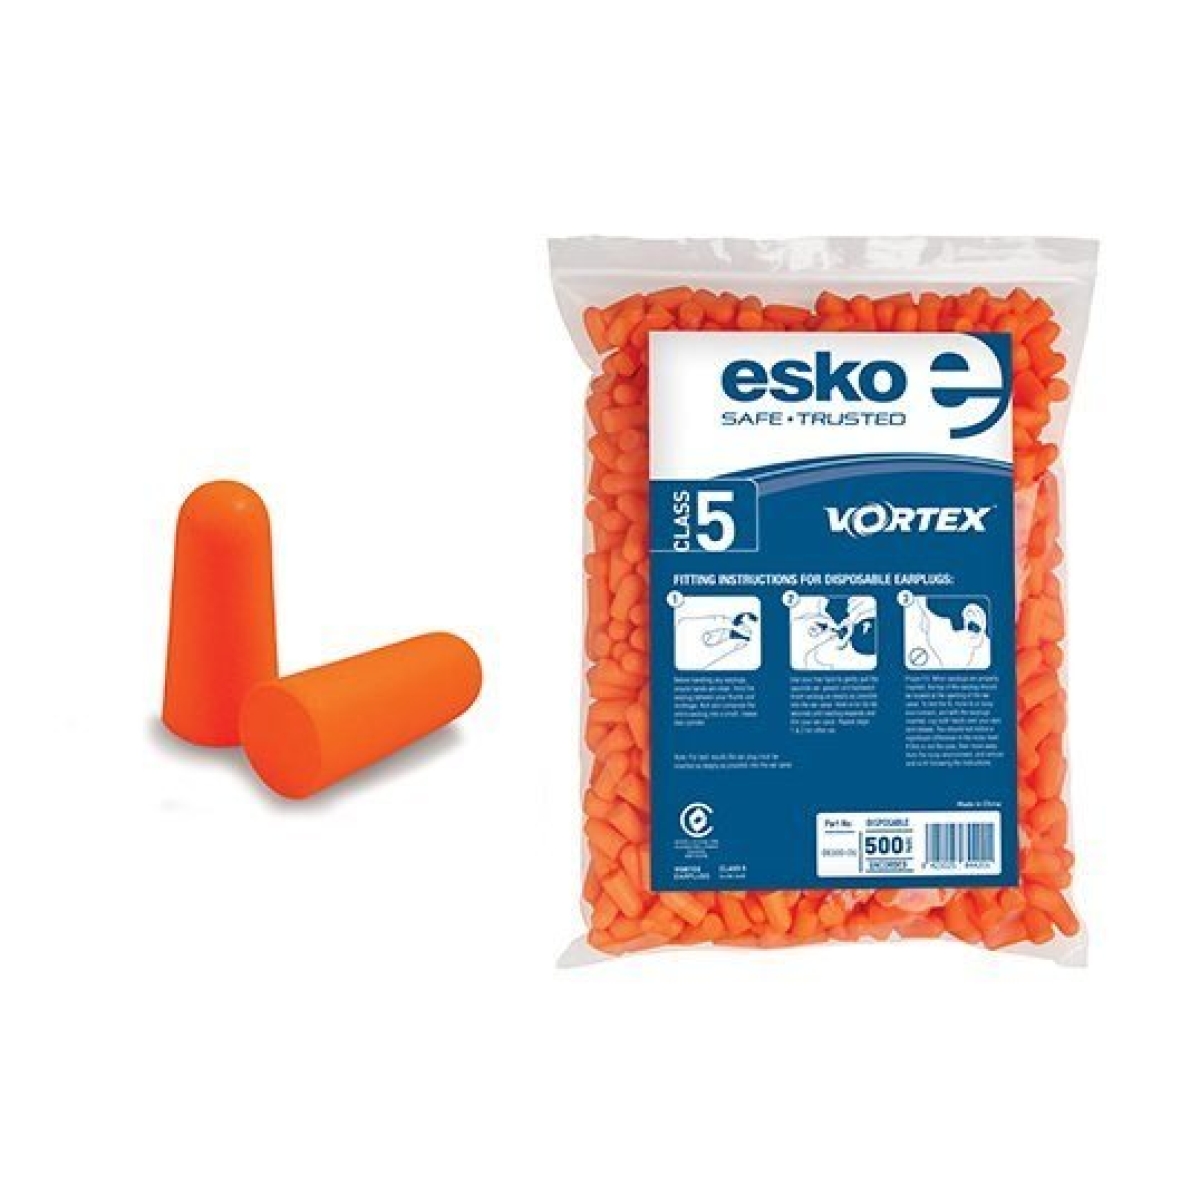 ESKO Class 5 Uncorded Earplugs Refill 500 Pack